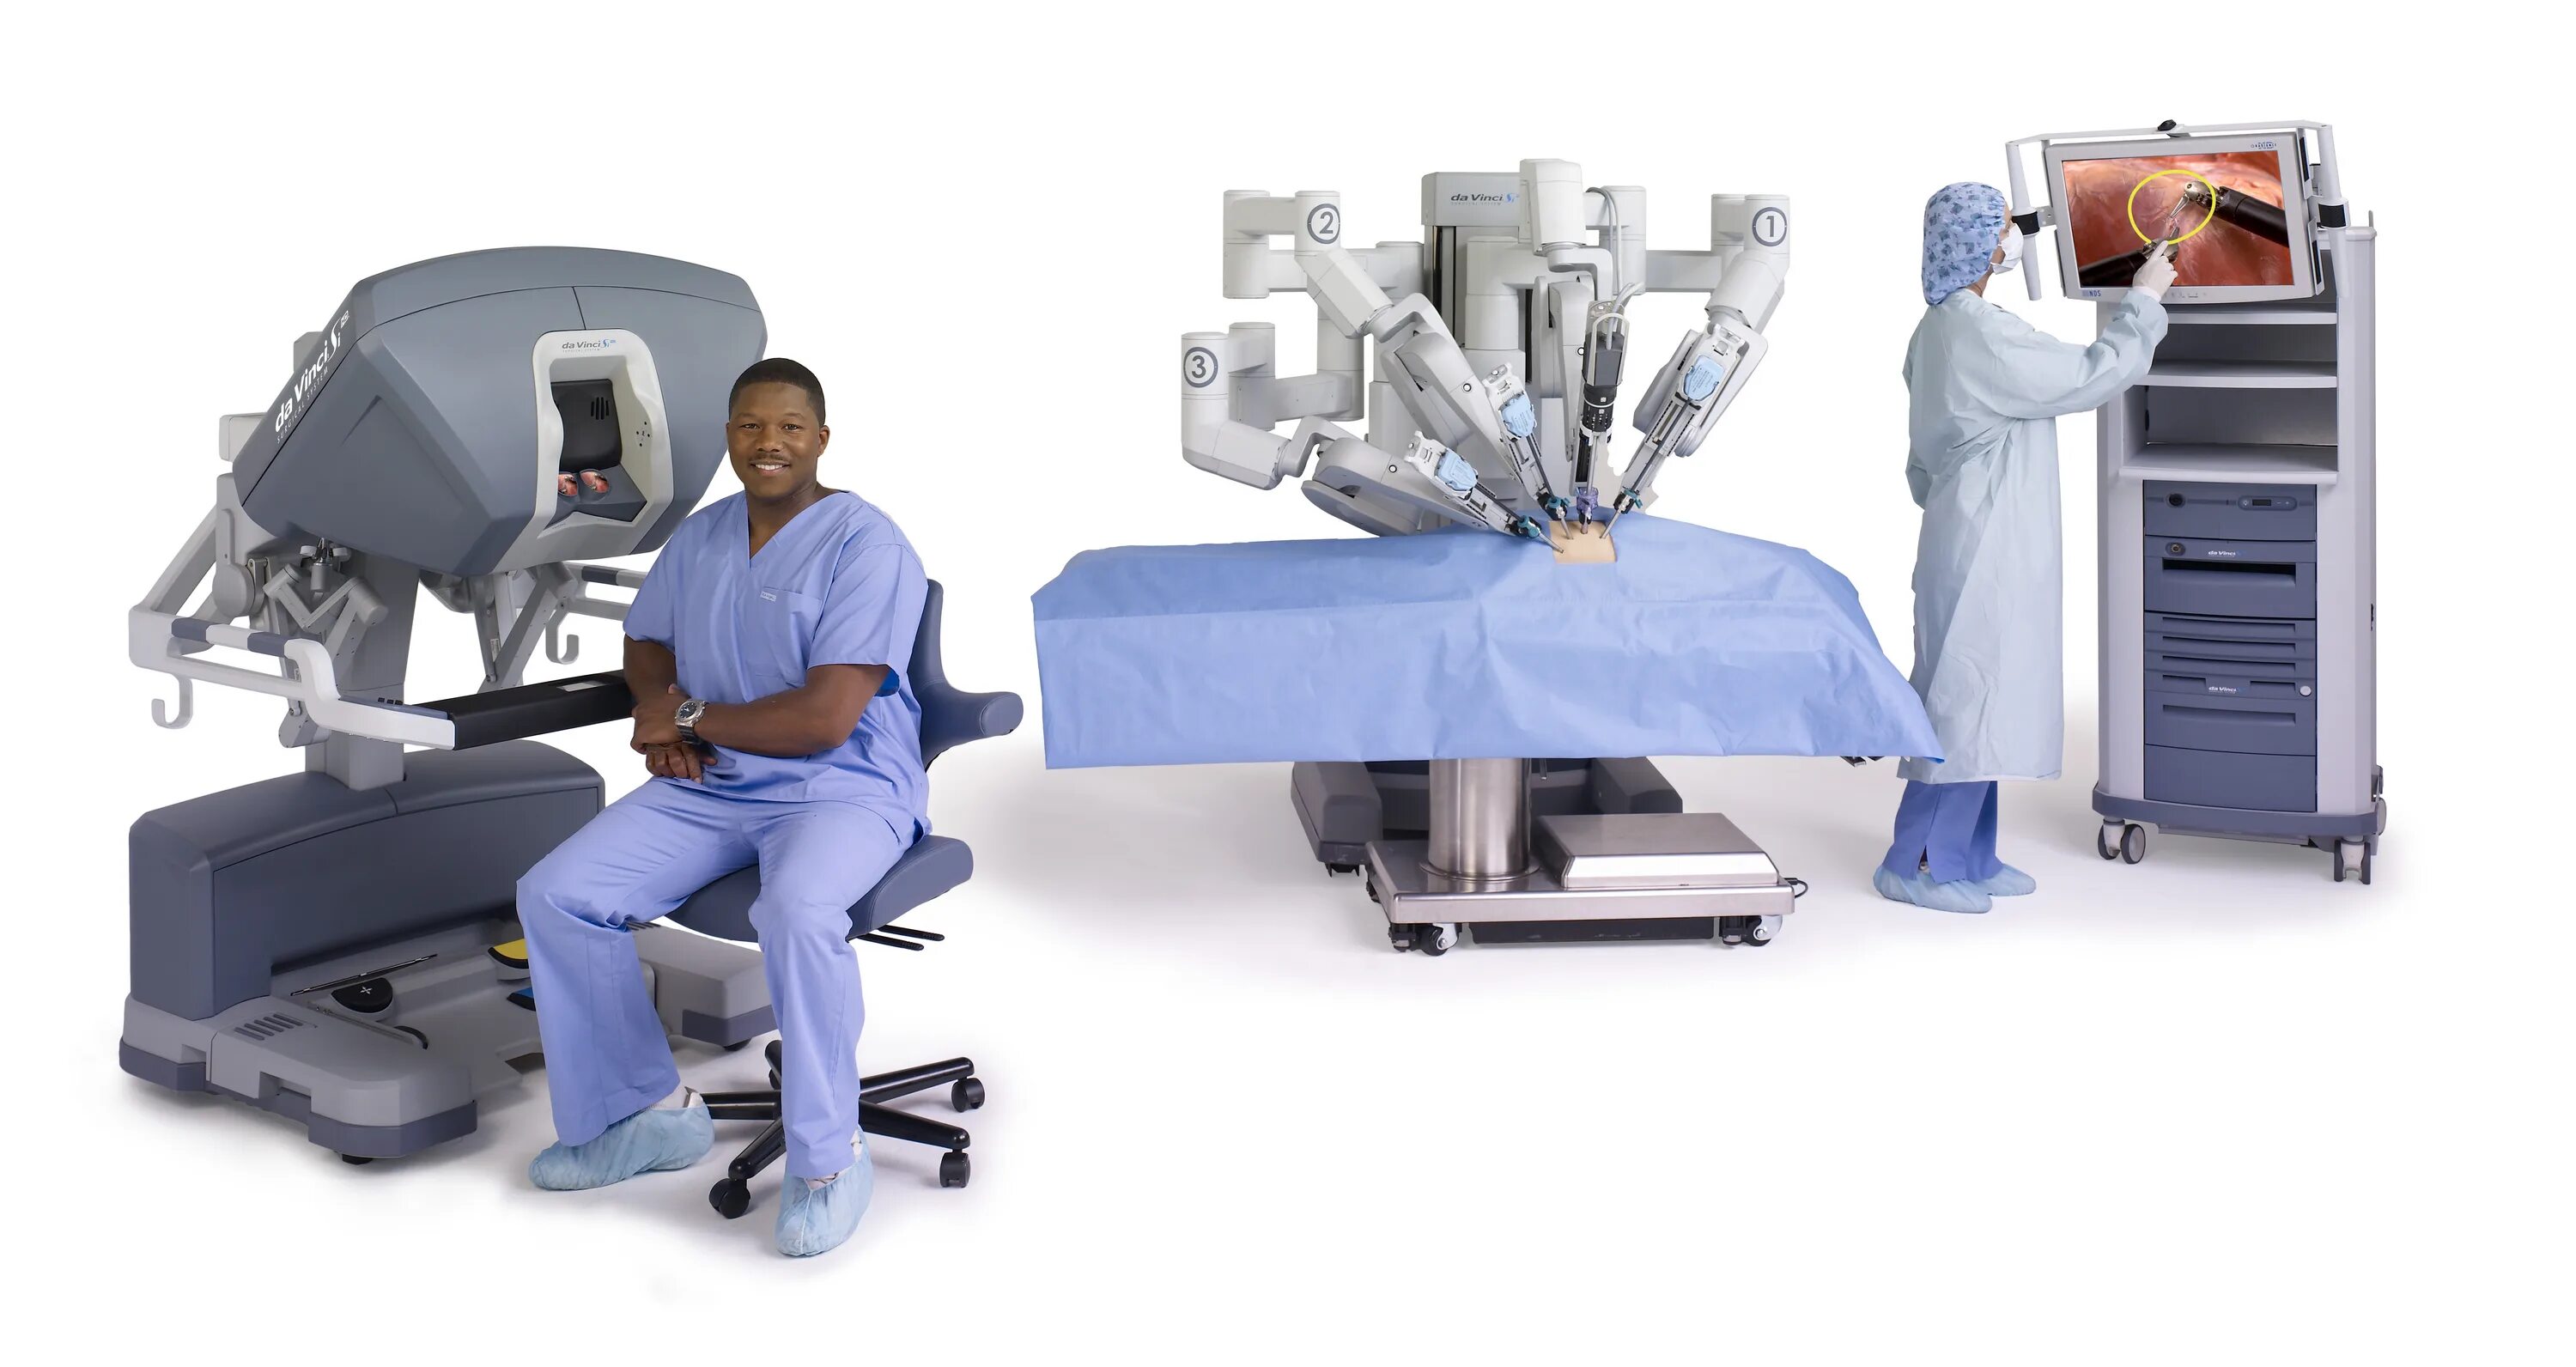 Робот-хирург da Vinci (да Винчи). Робот робот-хирург DAVINCI. Роботизированная хирургическая система da Vinci. Робот DAVINCI операция. Да винчи операция простата